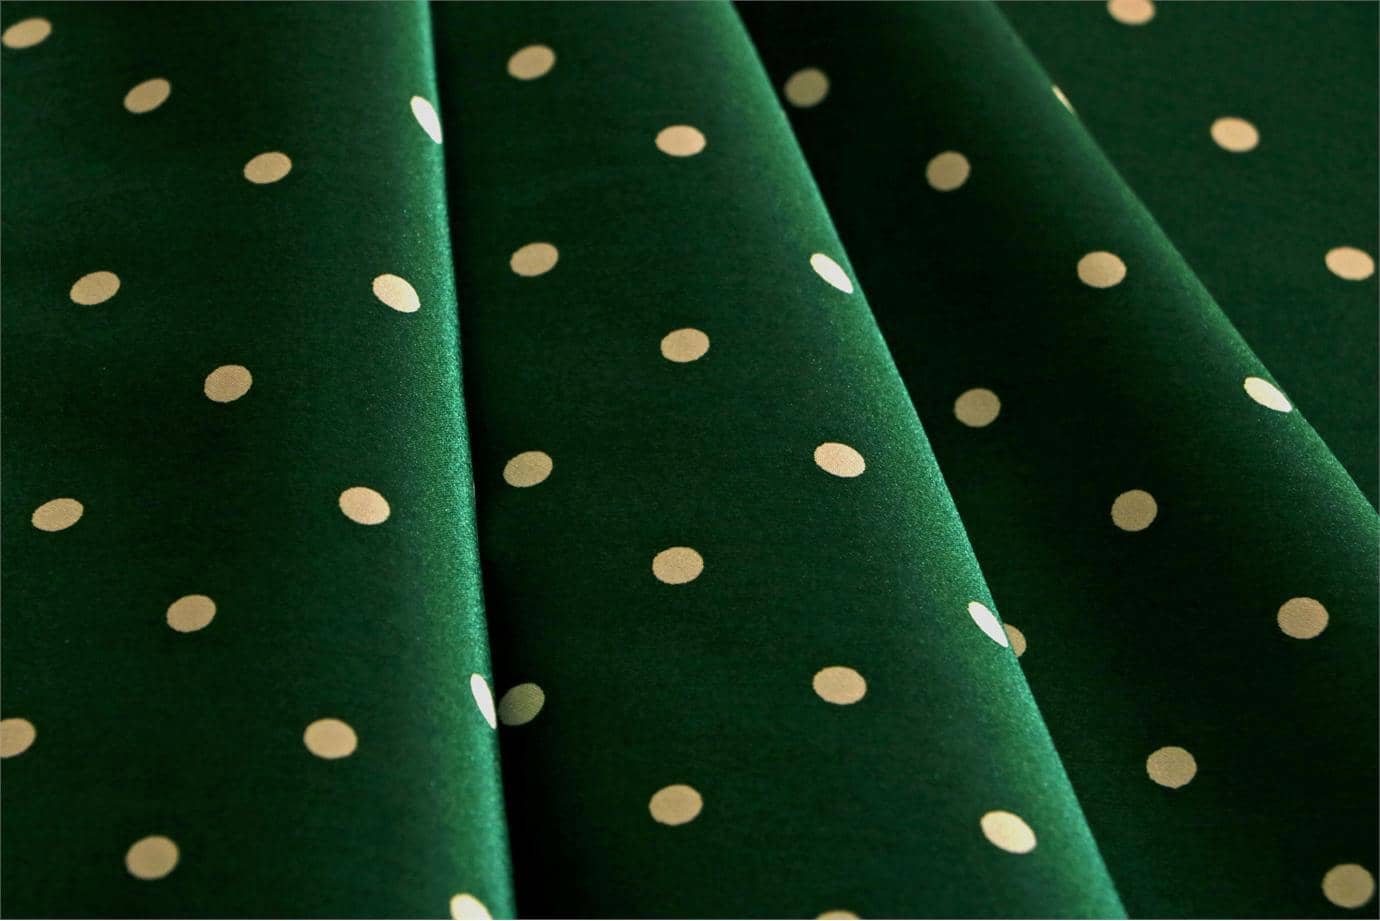 Green, White Silk Satin Polka Dot Fabric - Raso Se Omnibus Pois 201604